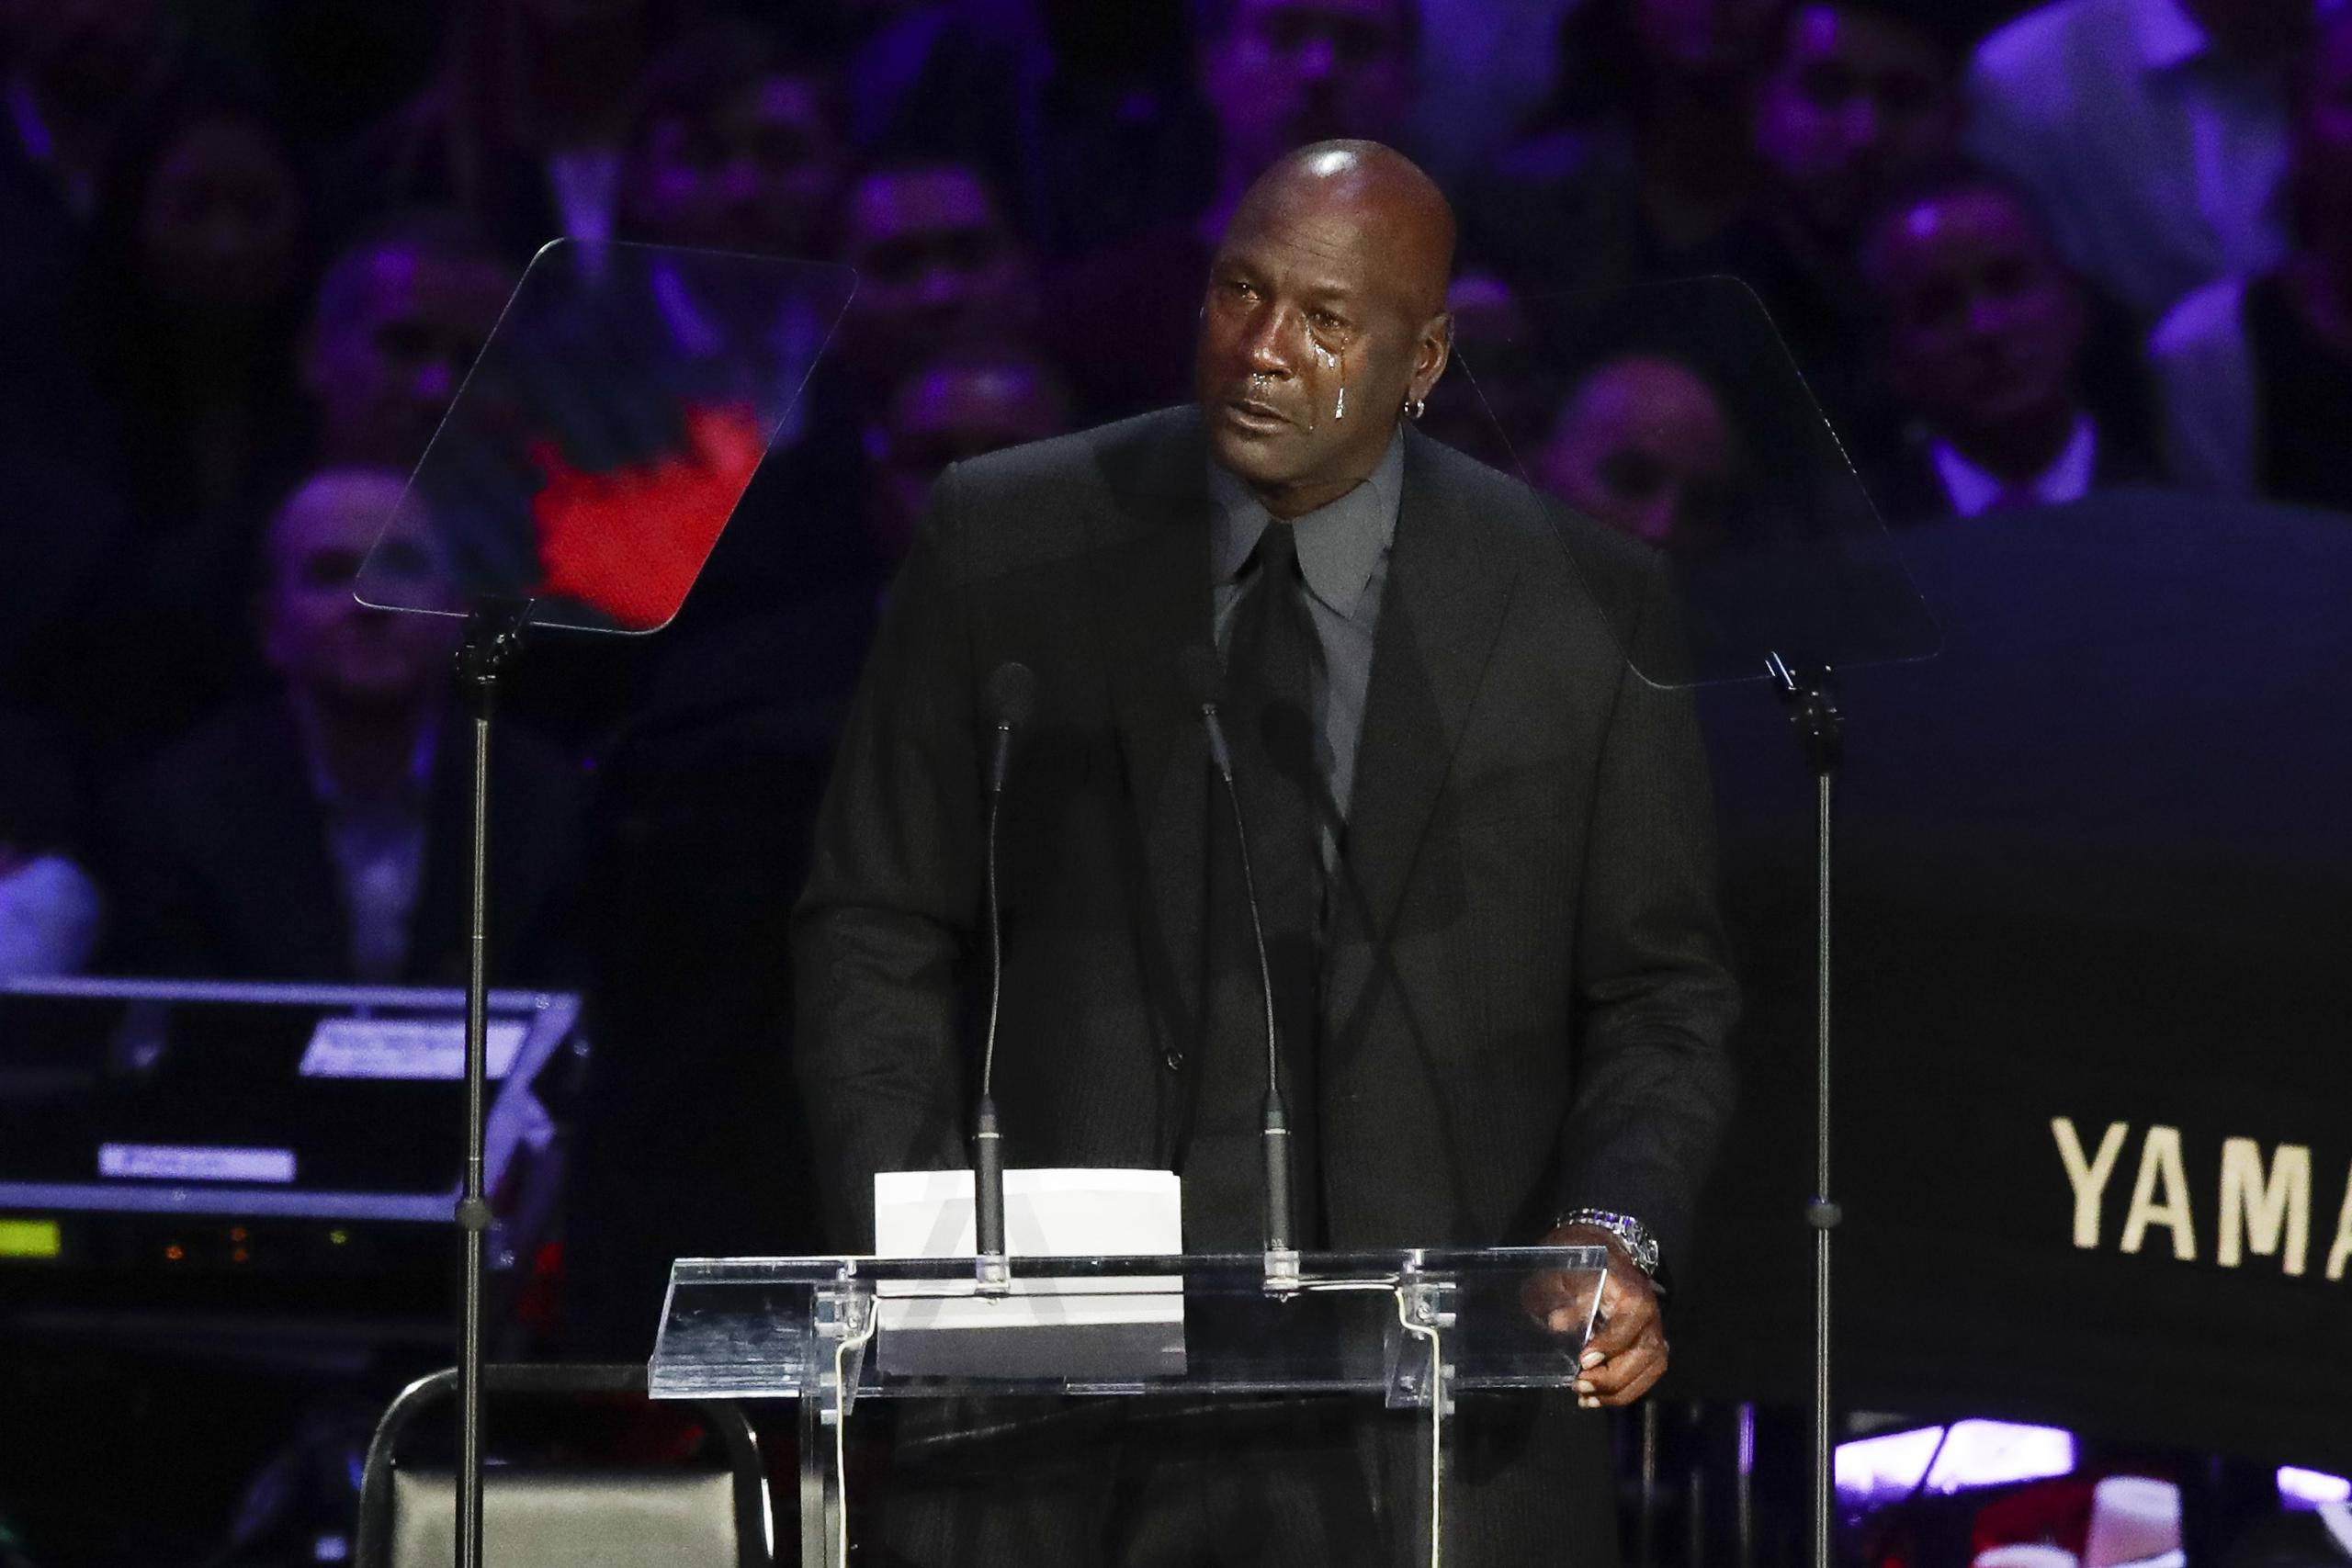 Michael Jordan reveló que Kobe Bryant y él se texteaban constantemente, y que el Black Mamba, siempre le pedía consejos para mejorar como jugador, esposo y padre.